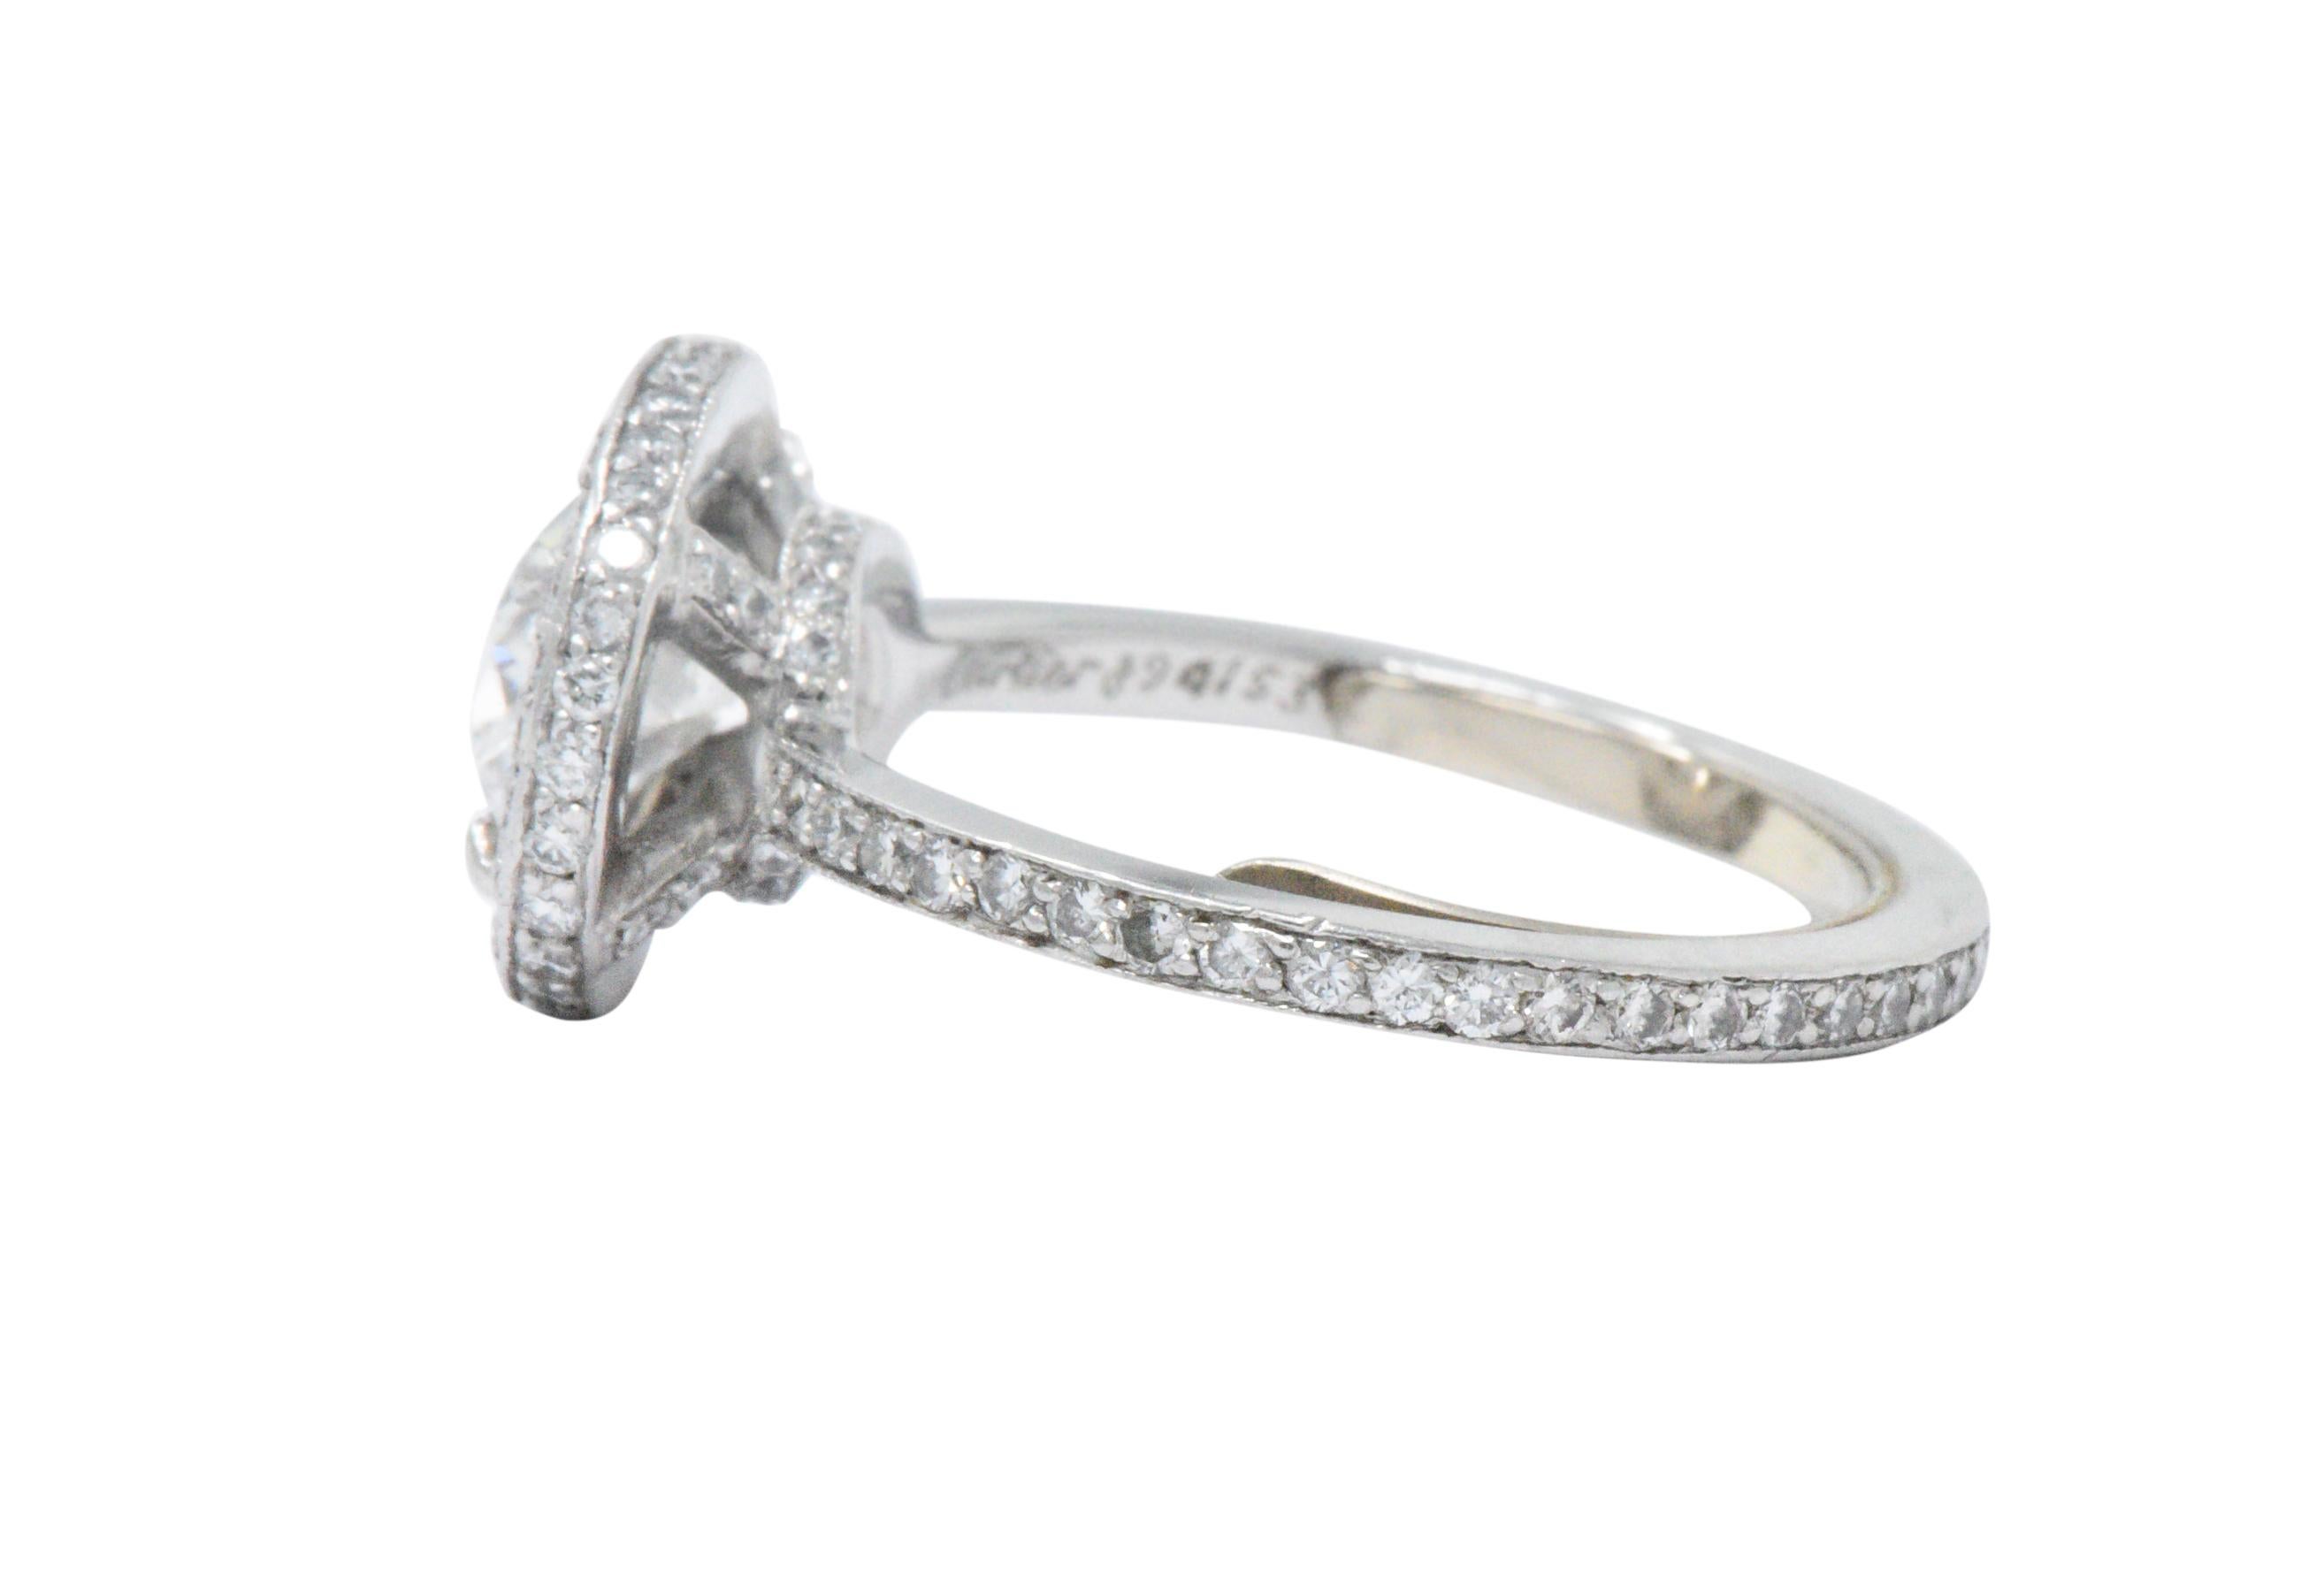 Contemporary Cartier 1.96 CTW Diamond & Platinum Engagement Ring With Original Box, GIA